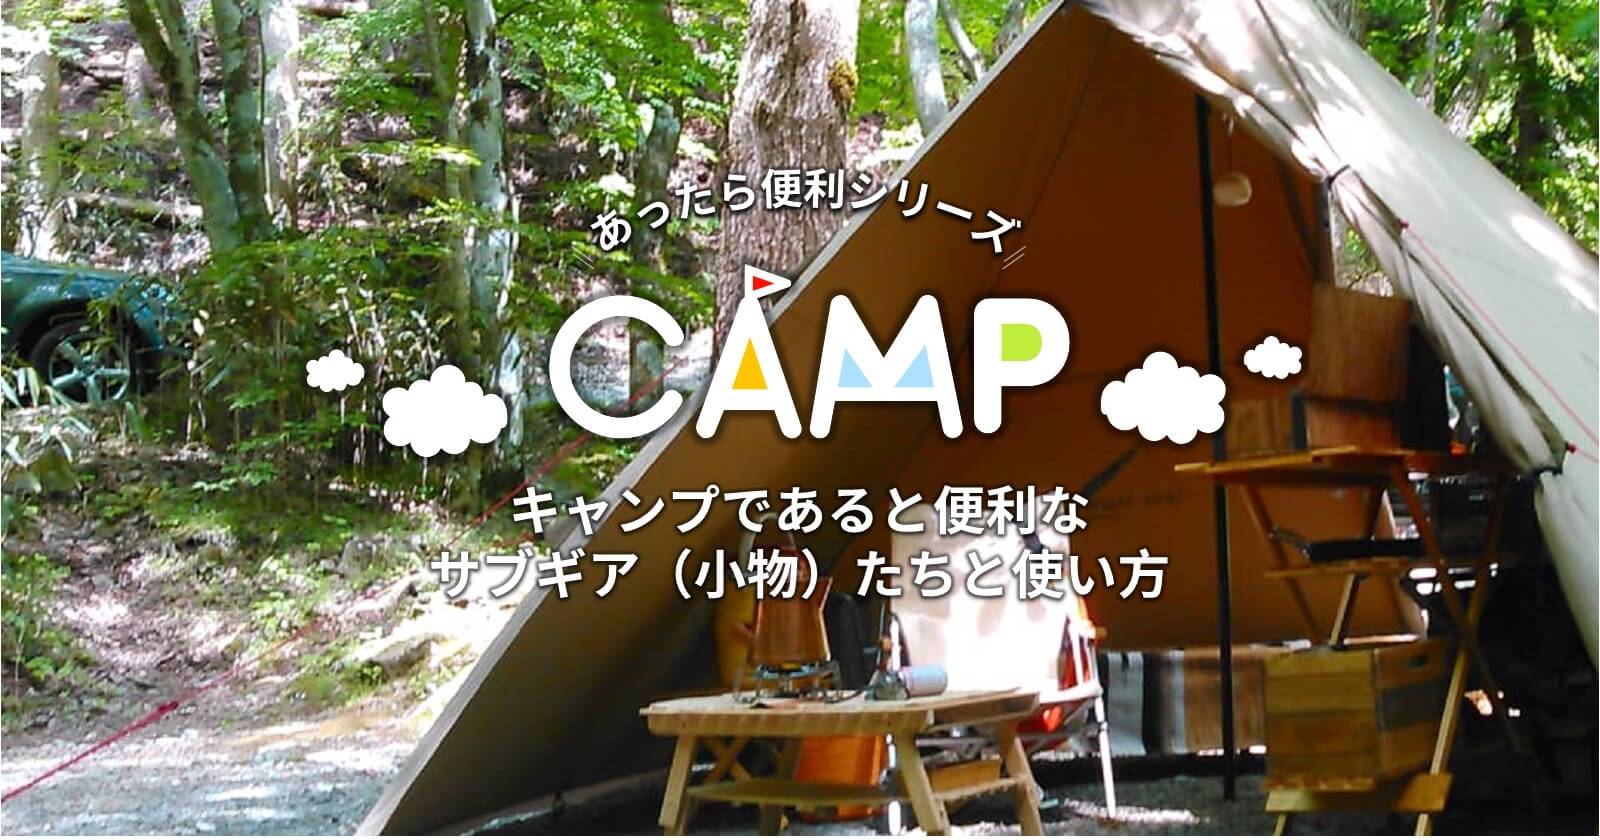 キャンプであると便利なサブギア（小物）たちと使い方 | TAKIBI（タキビ） | キャンプ・アウトドアの総合情報サイト